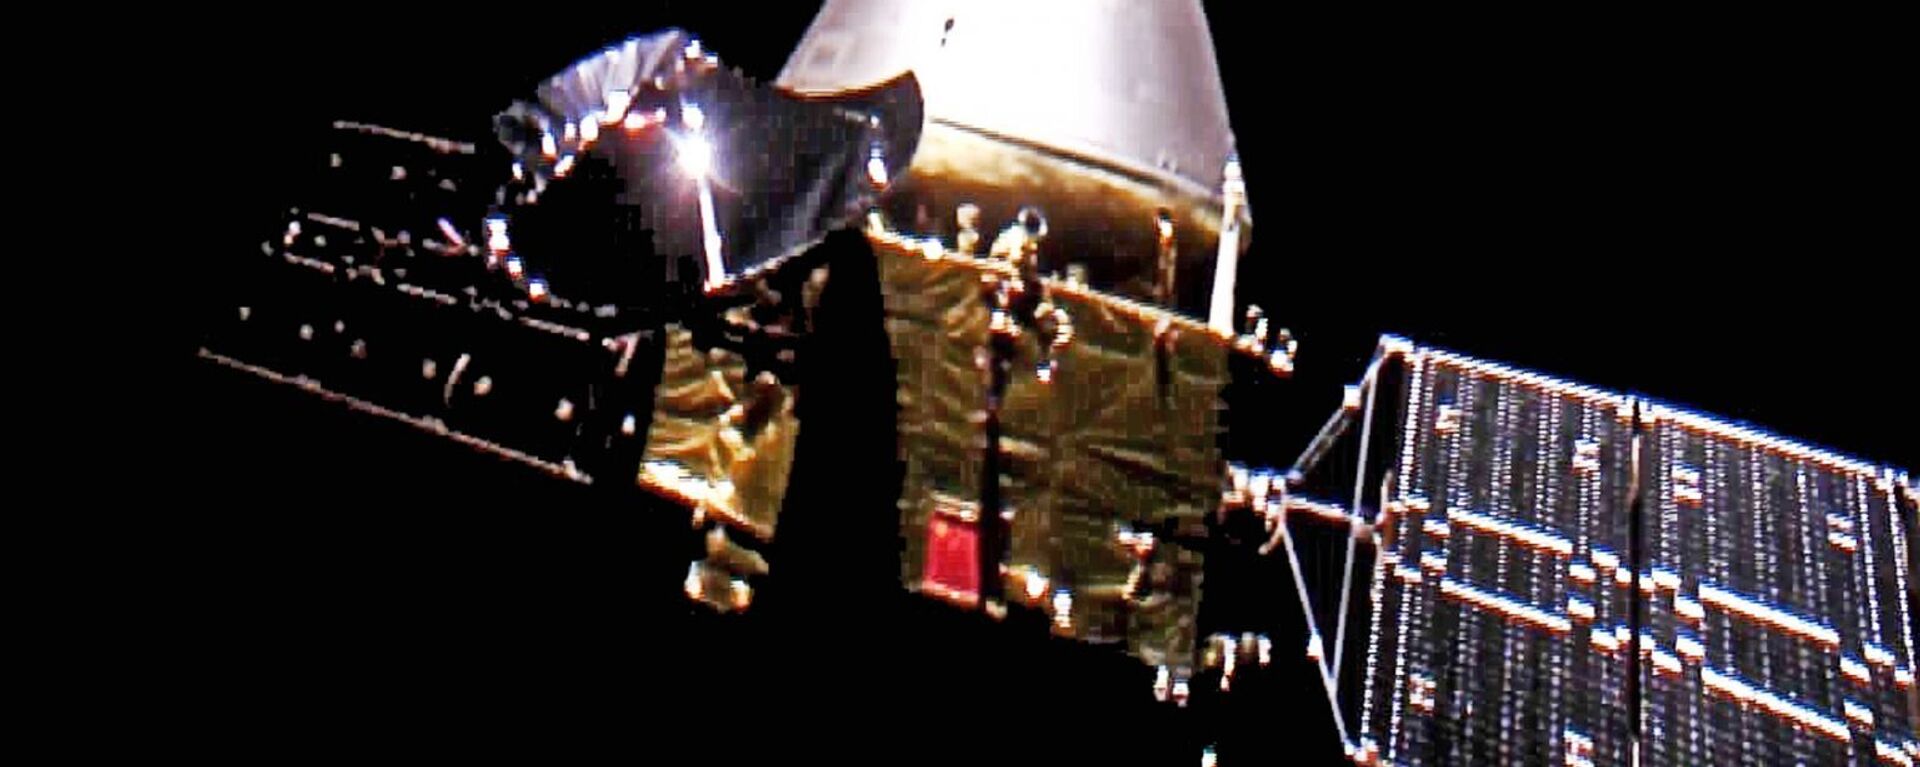 Tjanven-1 je lansiran u julu i očekuje se da uđe u Marsovu orbitu oko 10. februara - Sputnik Srbija, 1920, 15.05.2021